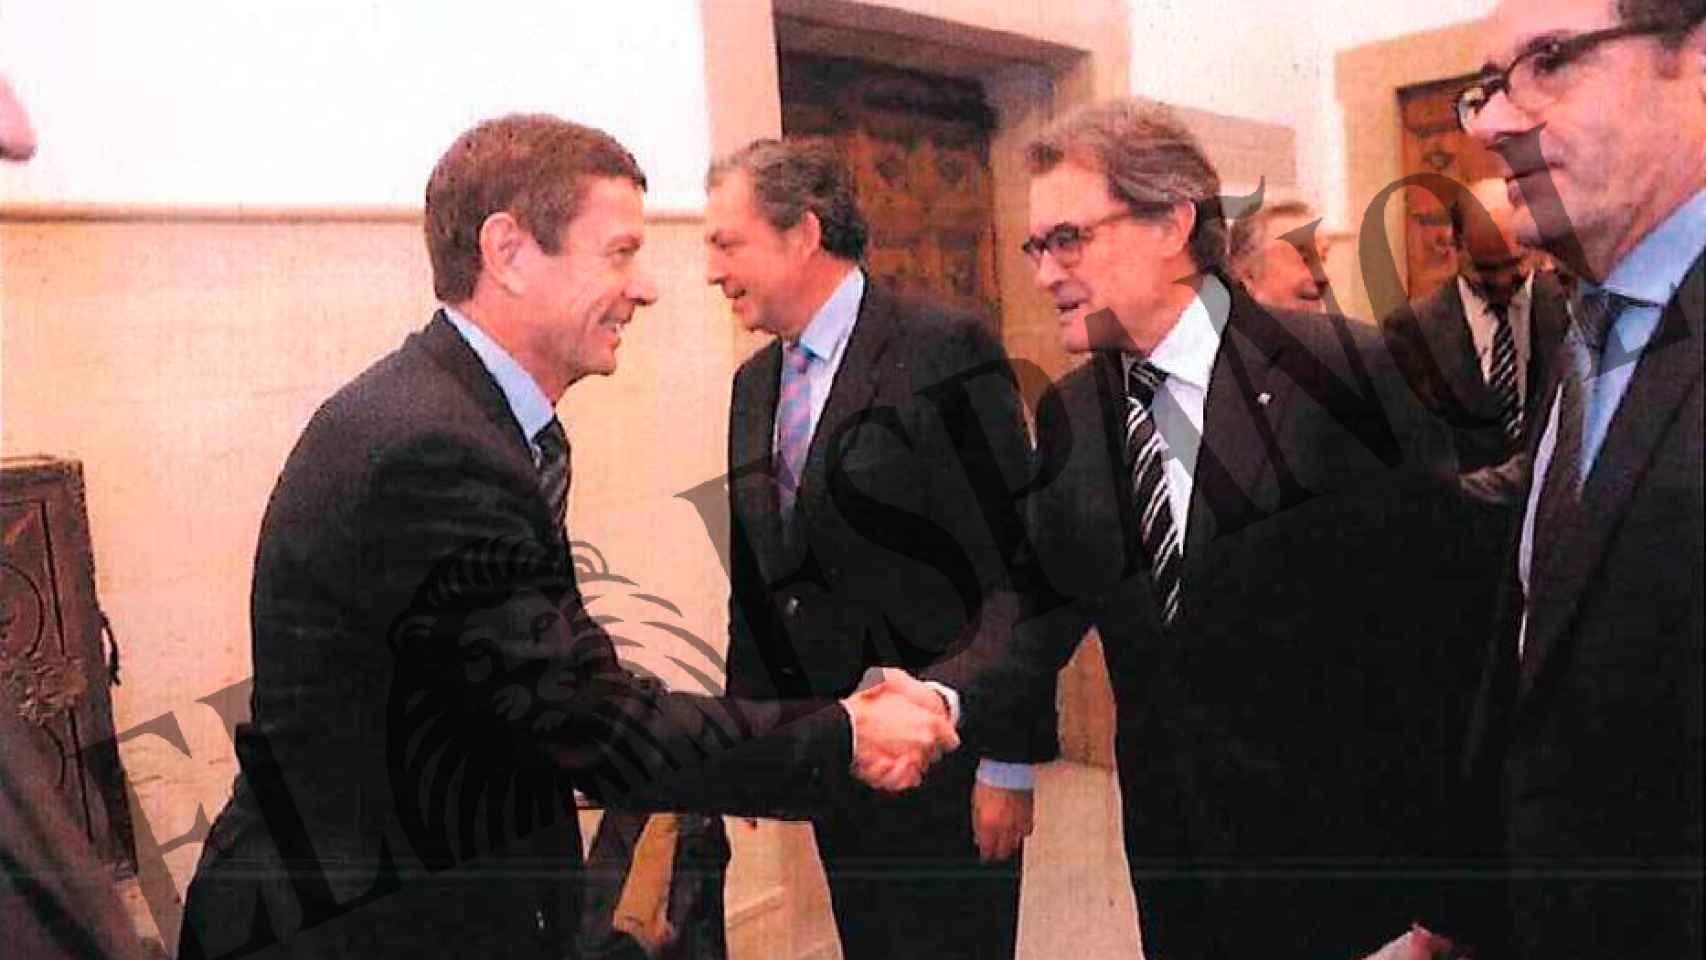 Reunión de Artur Mas con empresarios investigados.